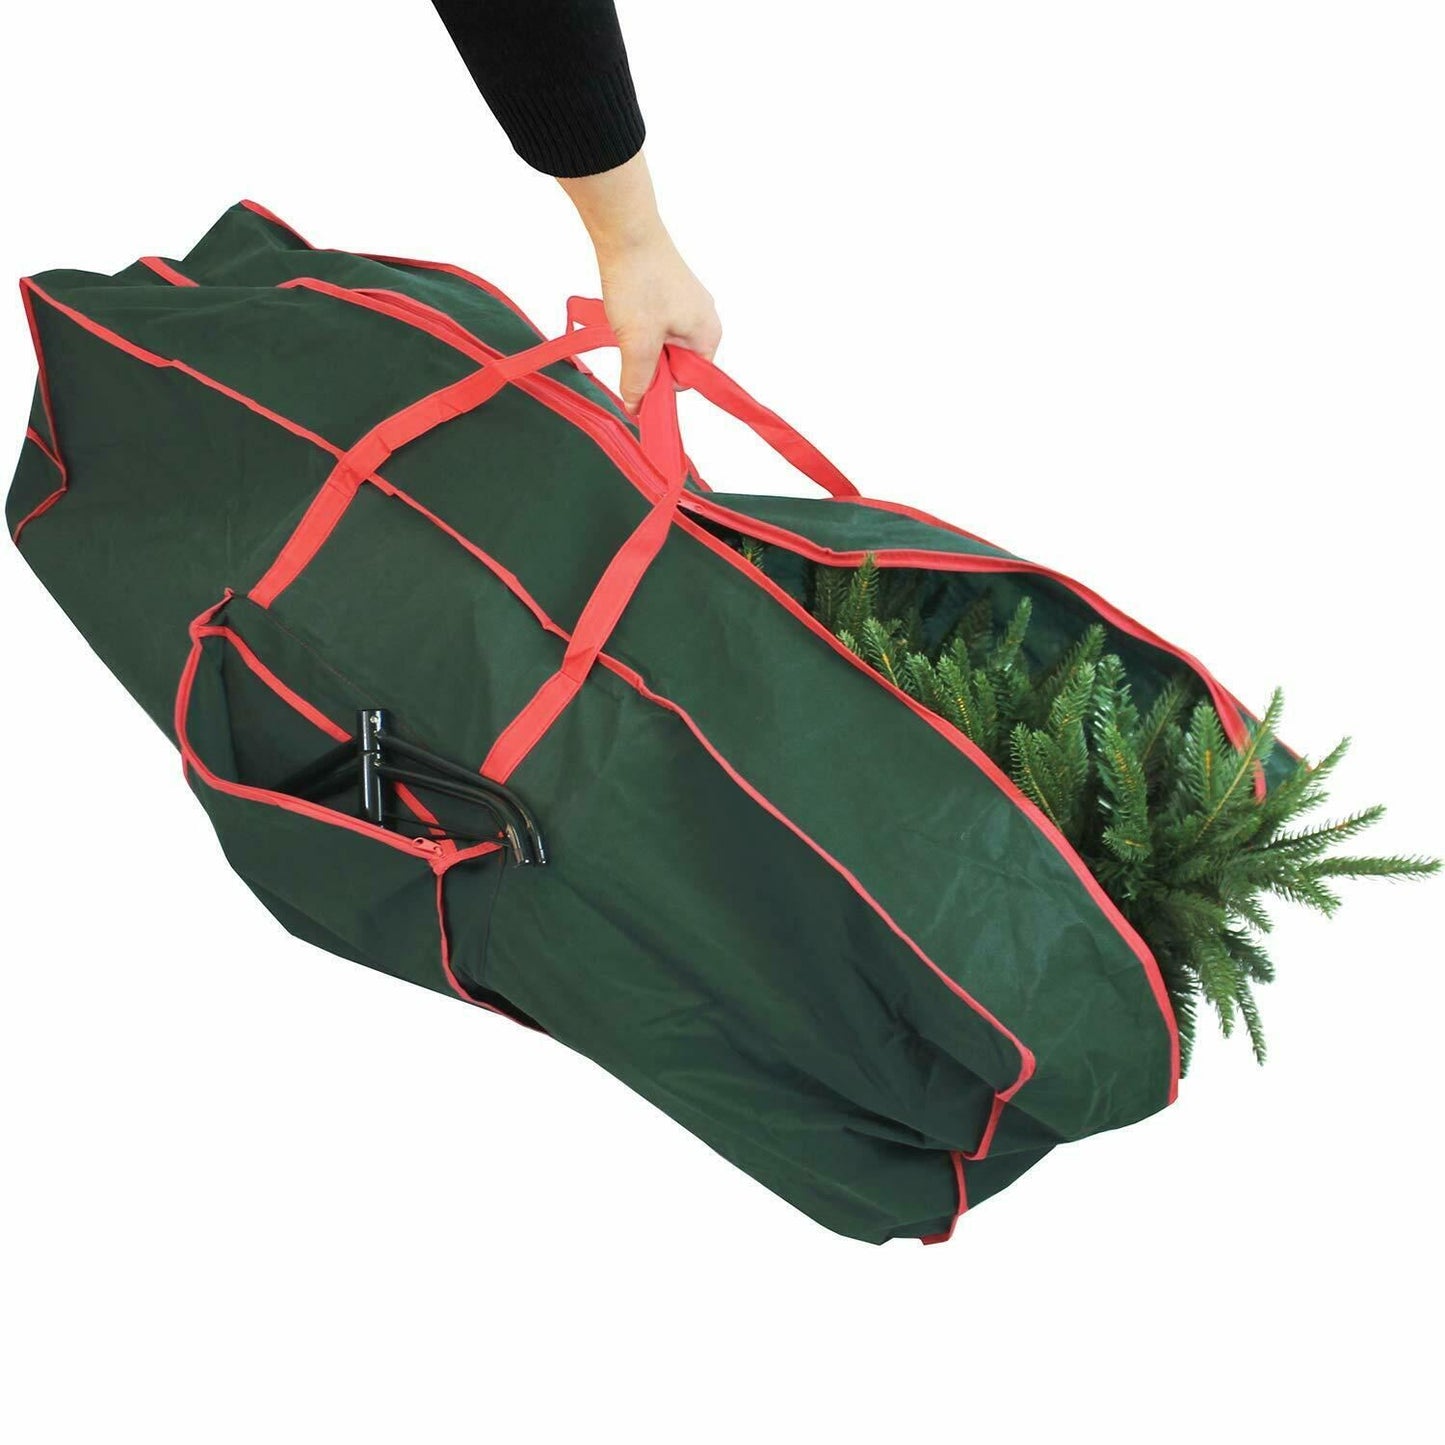 Christmas Tree Storage Bag Large by The Magic Toy Shop - UKBuyZone